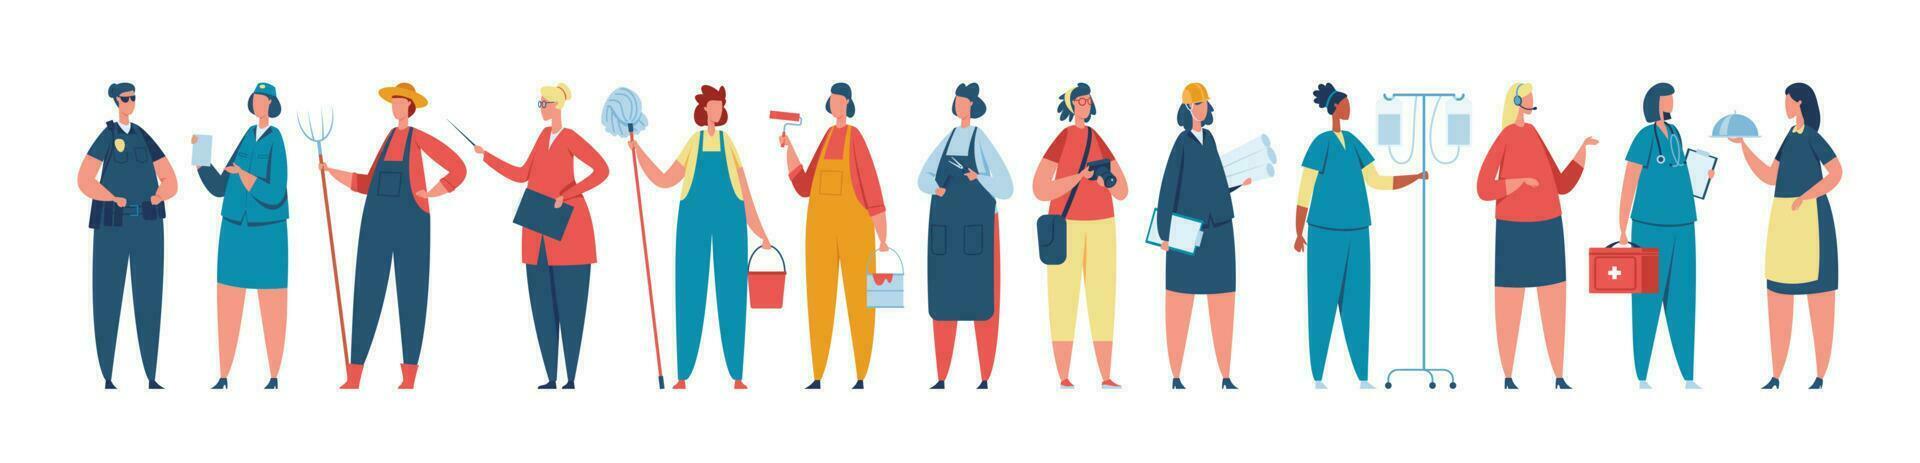 profissional fêmea trabalhador dentro uniforme, mulheres do diferente ocupações. diverso grupo do mulheres trabalhadores em pé juntos vetor ilustração